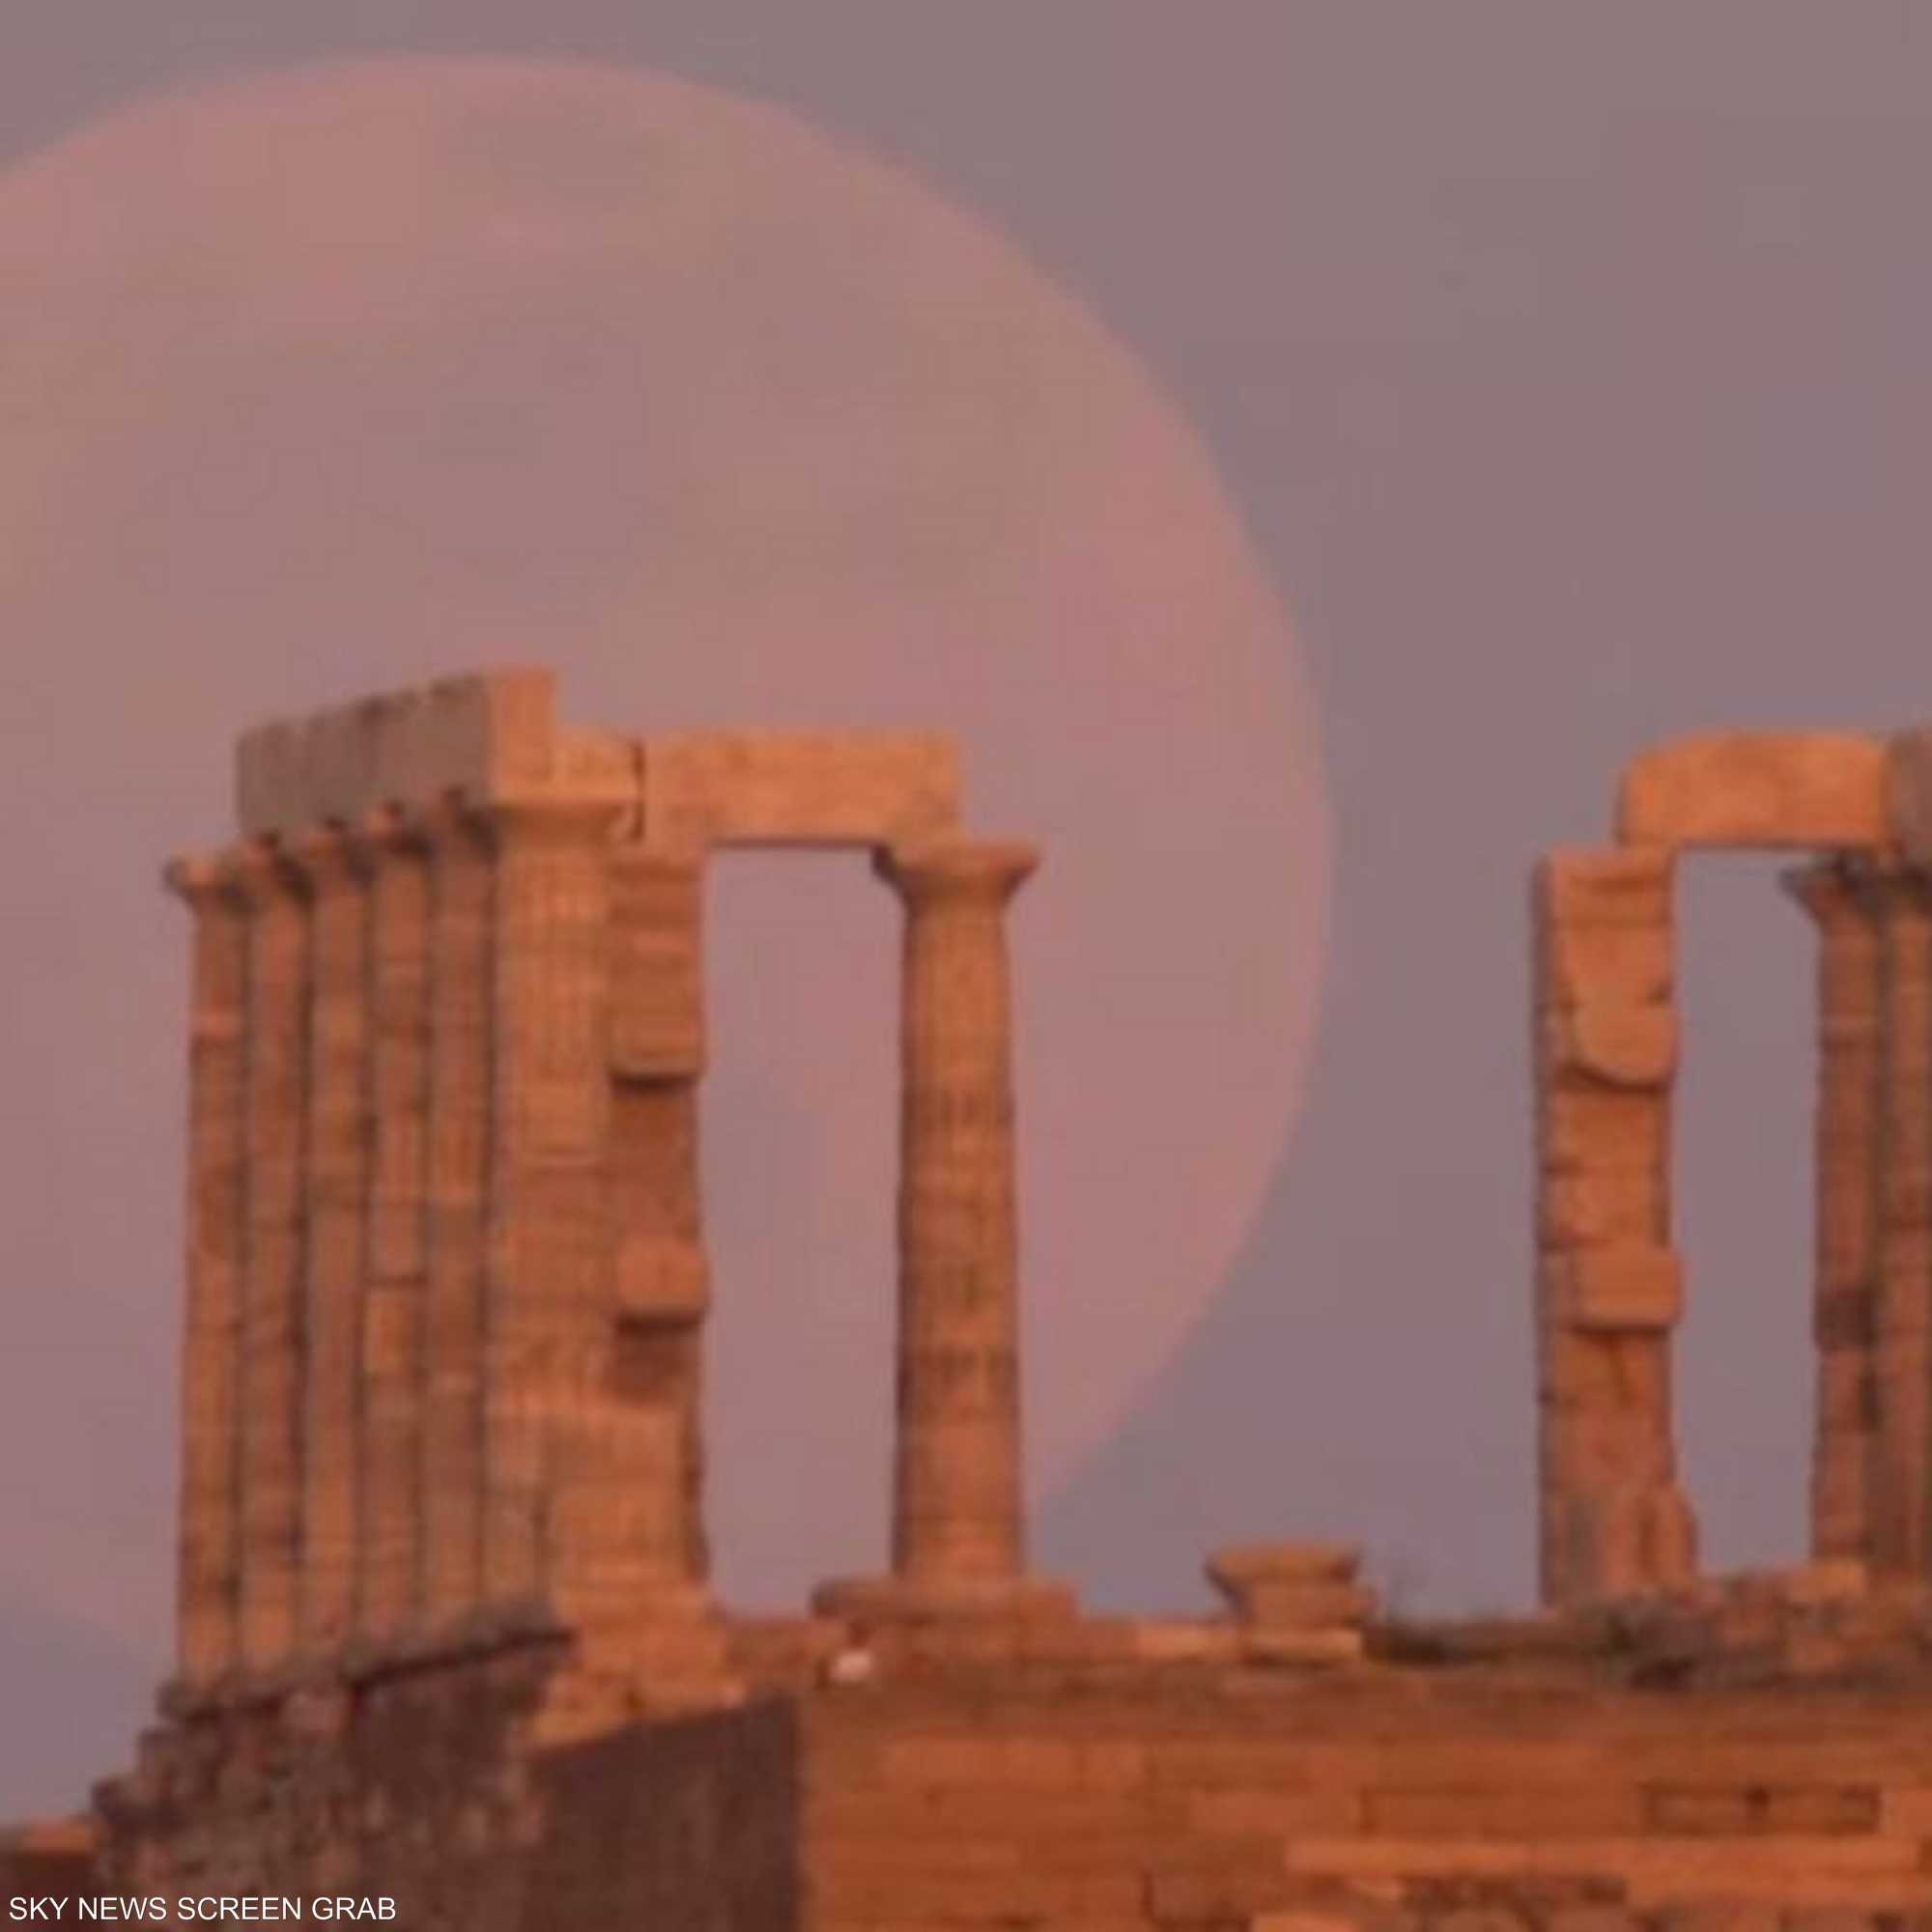 سماء اليونان تشهد ظاهرة "القمر الدموي العملاق"